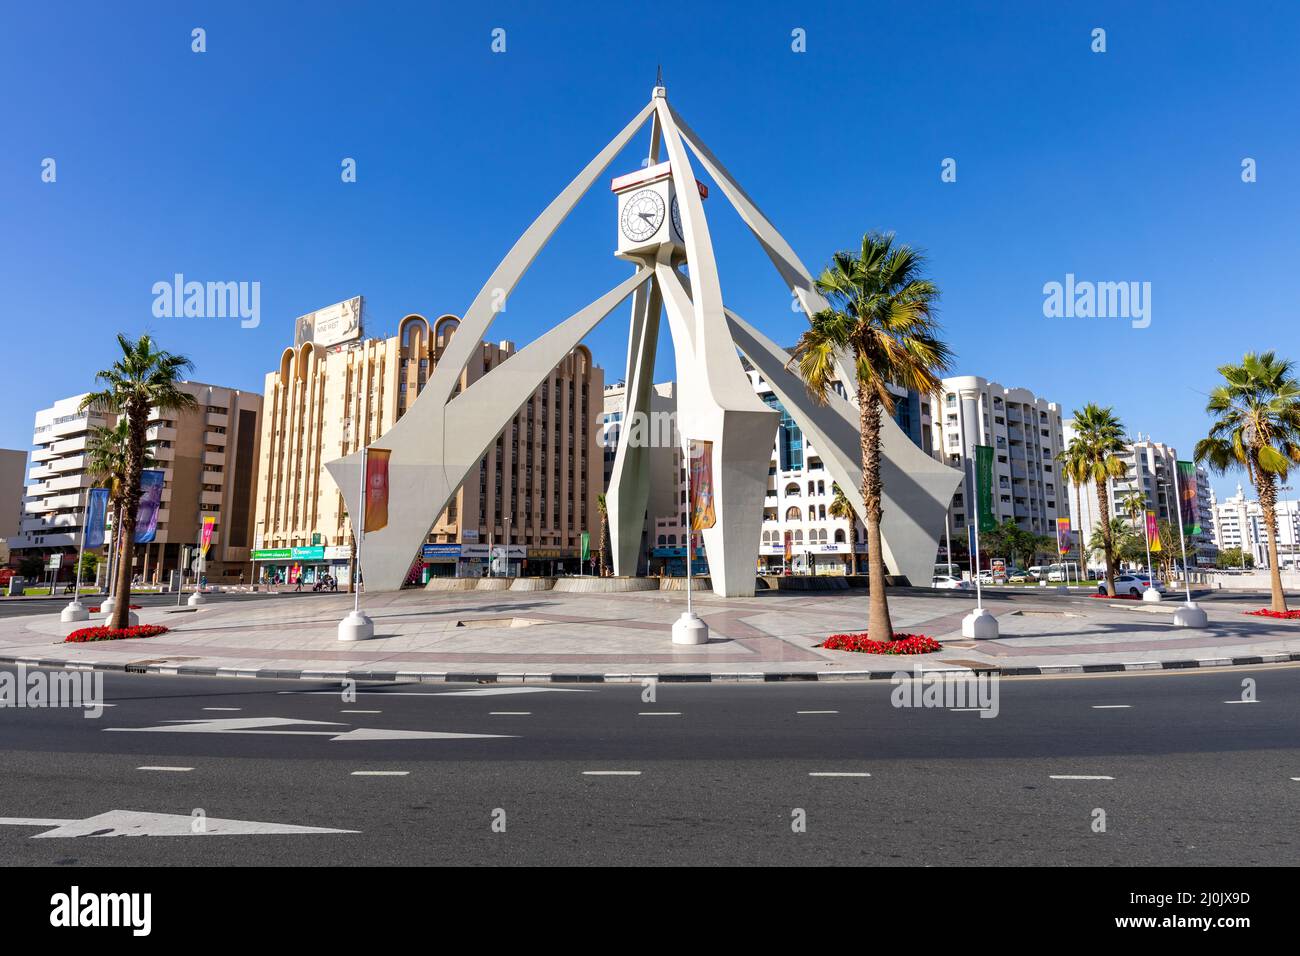 La rotonda de la torre del reloj de Deira, un antiguo monumento de Dubai construido en 1965. Emiratos Árabes Unidos. Oriente Medio. Foto de stock